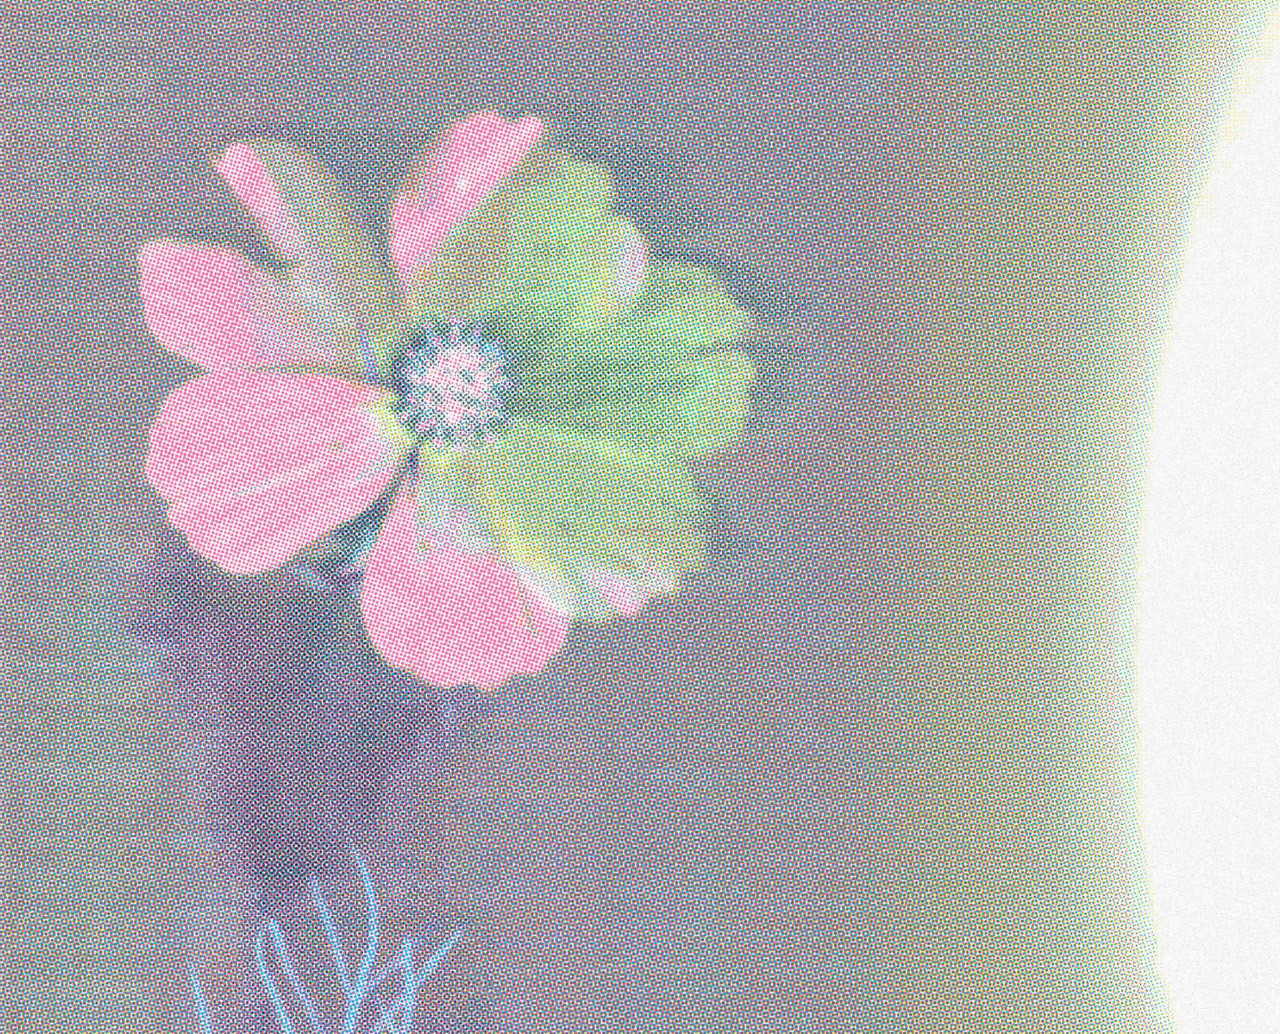 Vizuál desky Všelijake kvety dívčího sboru Lada